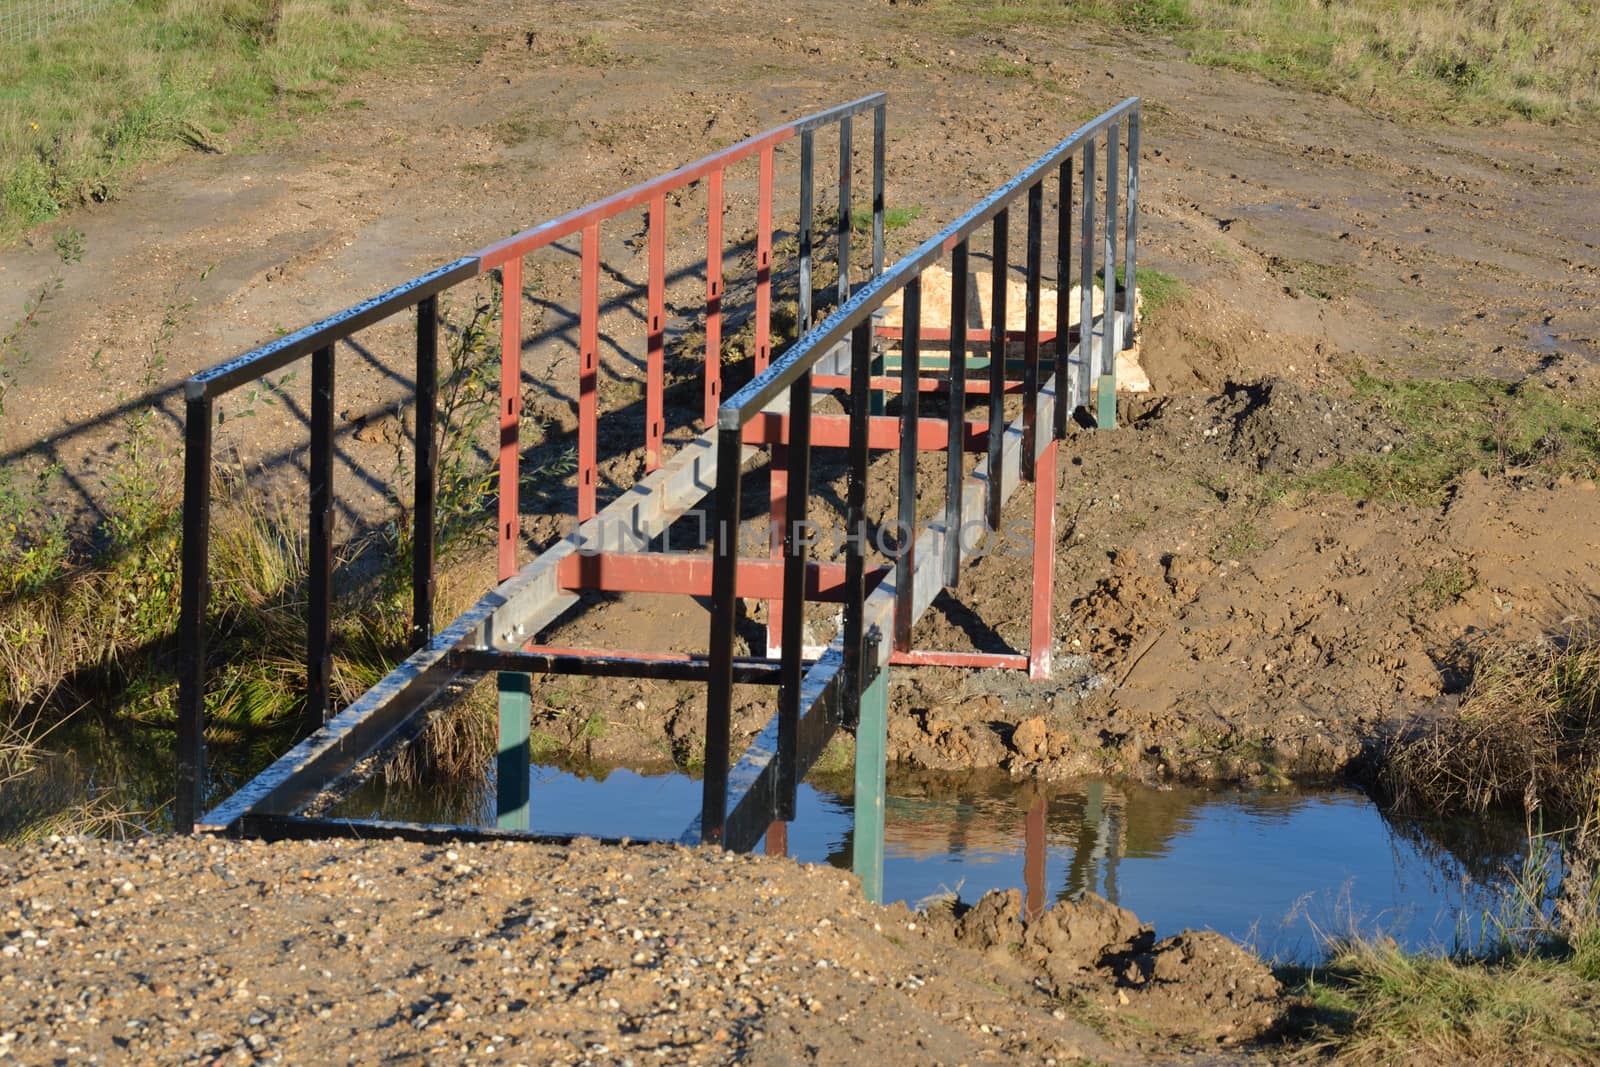 Metal footbridge being constructed